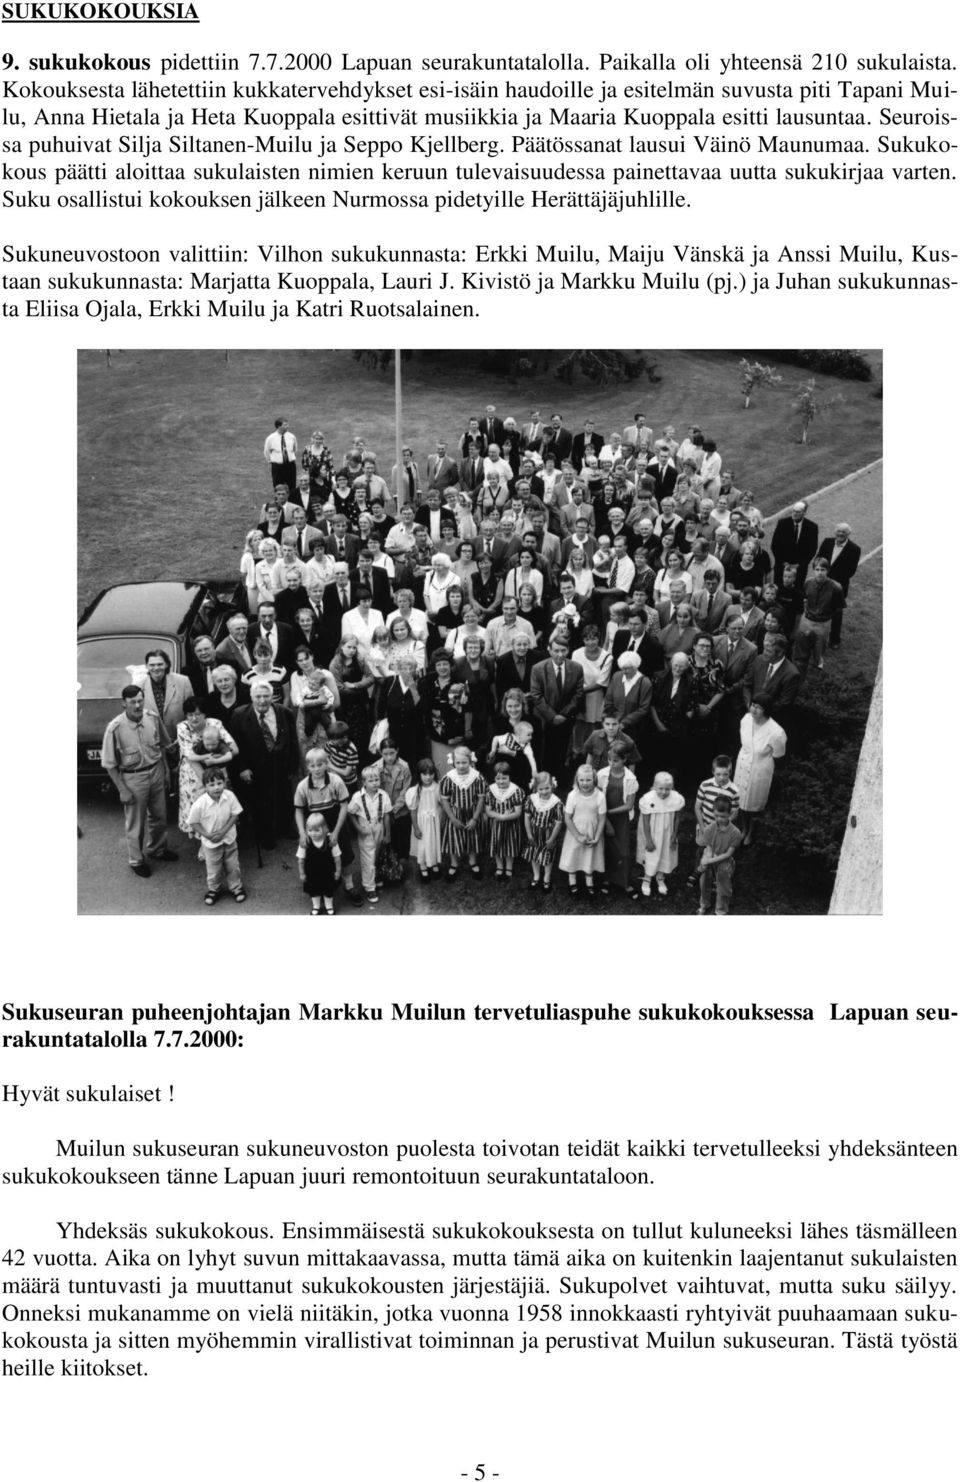 Seuroissa puhuivat Silja Siltanen-Muilu ja Seppo Kjellberg. Päätössanat lausui Väinö Maunumaa. Sukukokous päätti aloittaa sukulaisten nimien keruun tulevaisuudessa painettavaa uutta sukukirjaa varten.